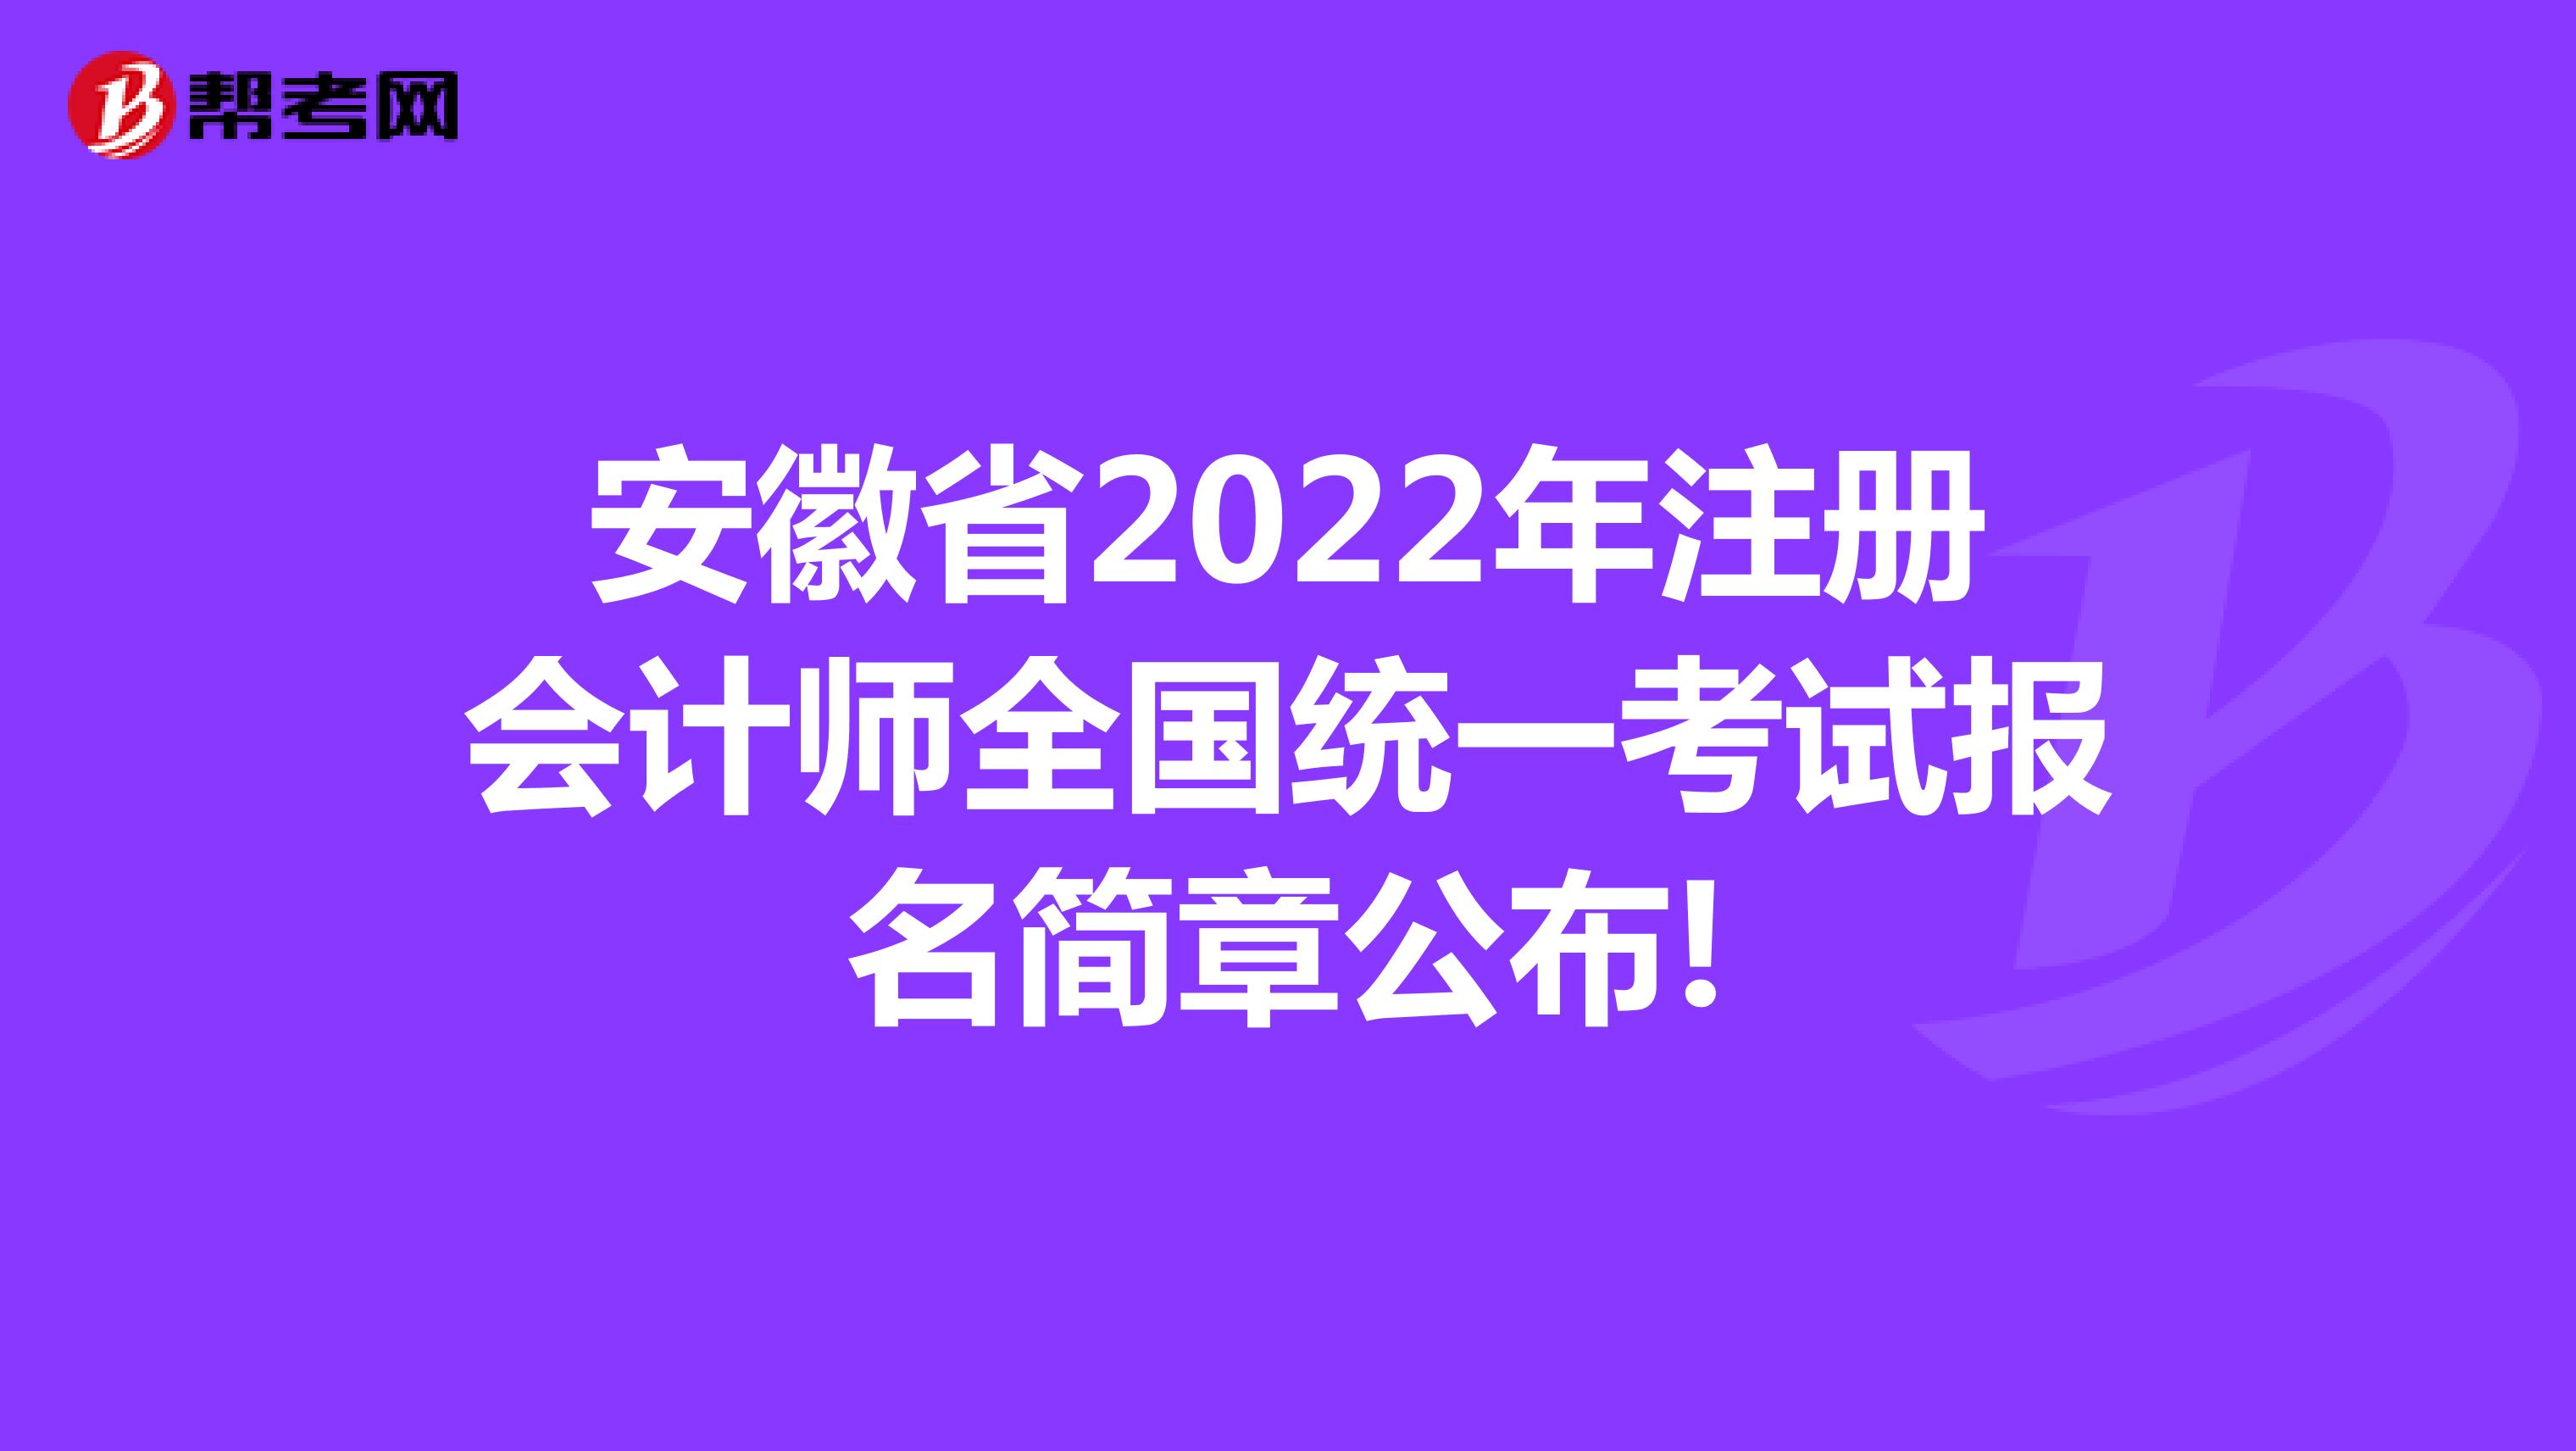 安徽省2022年注册会计师全国统一考试报名简章公布!